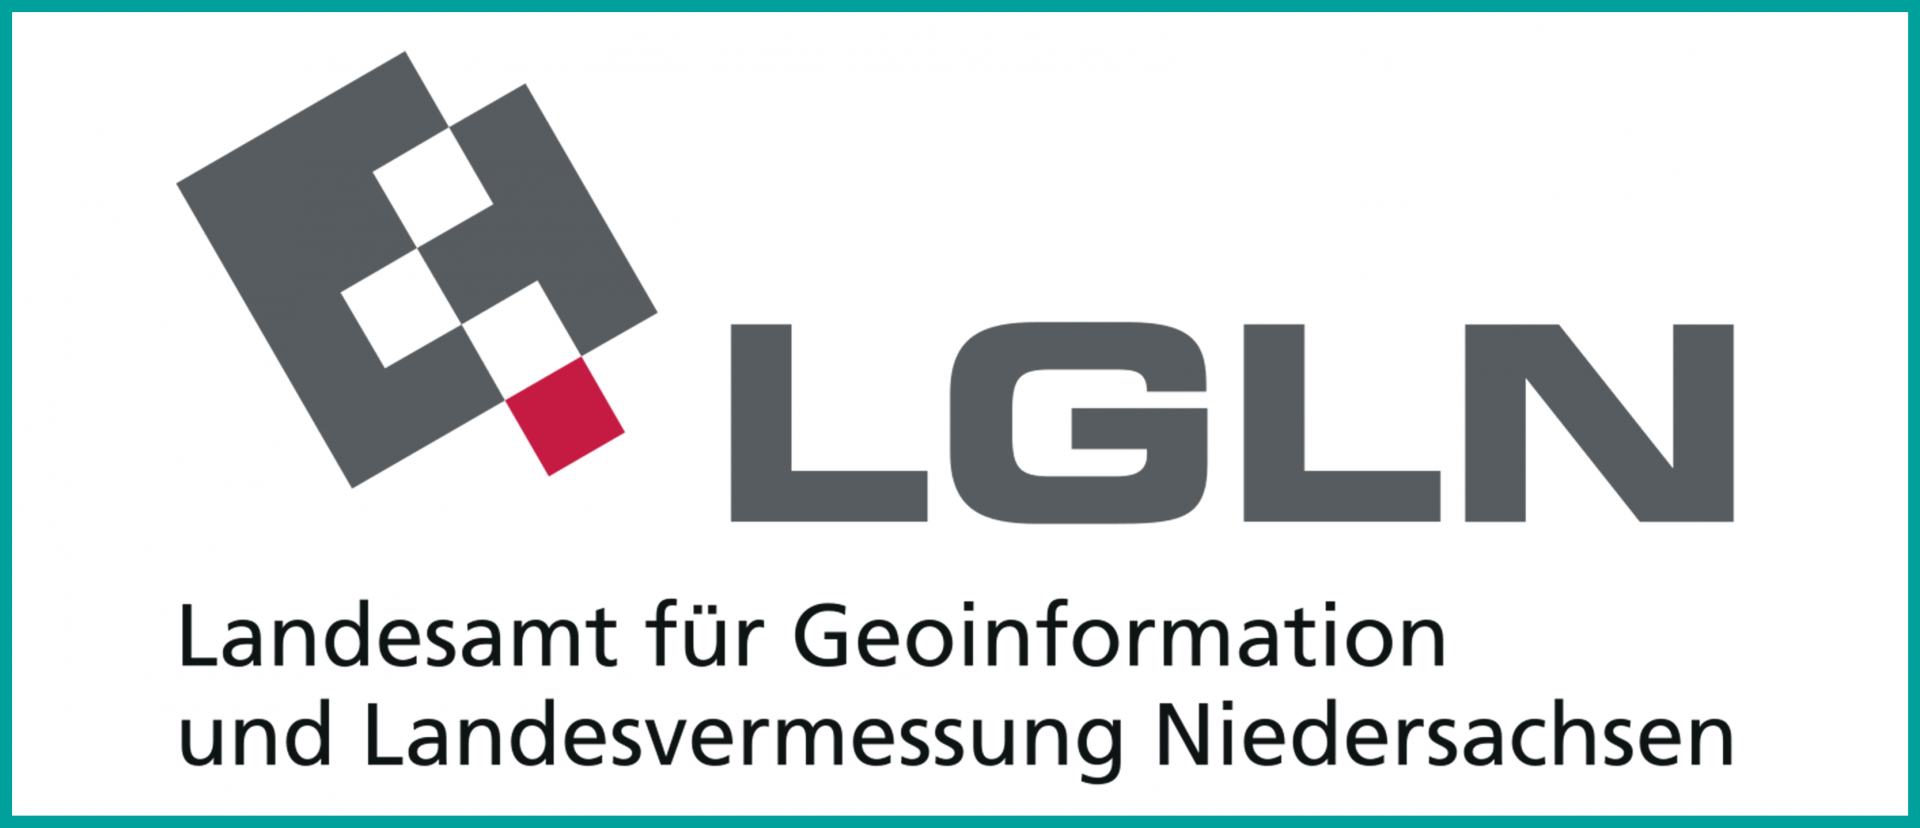 LGLN Landesamt für Geoinformation und Landesvermessung Niedersachsen